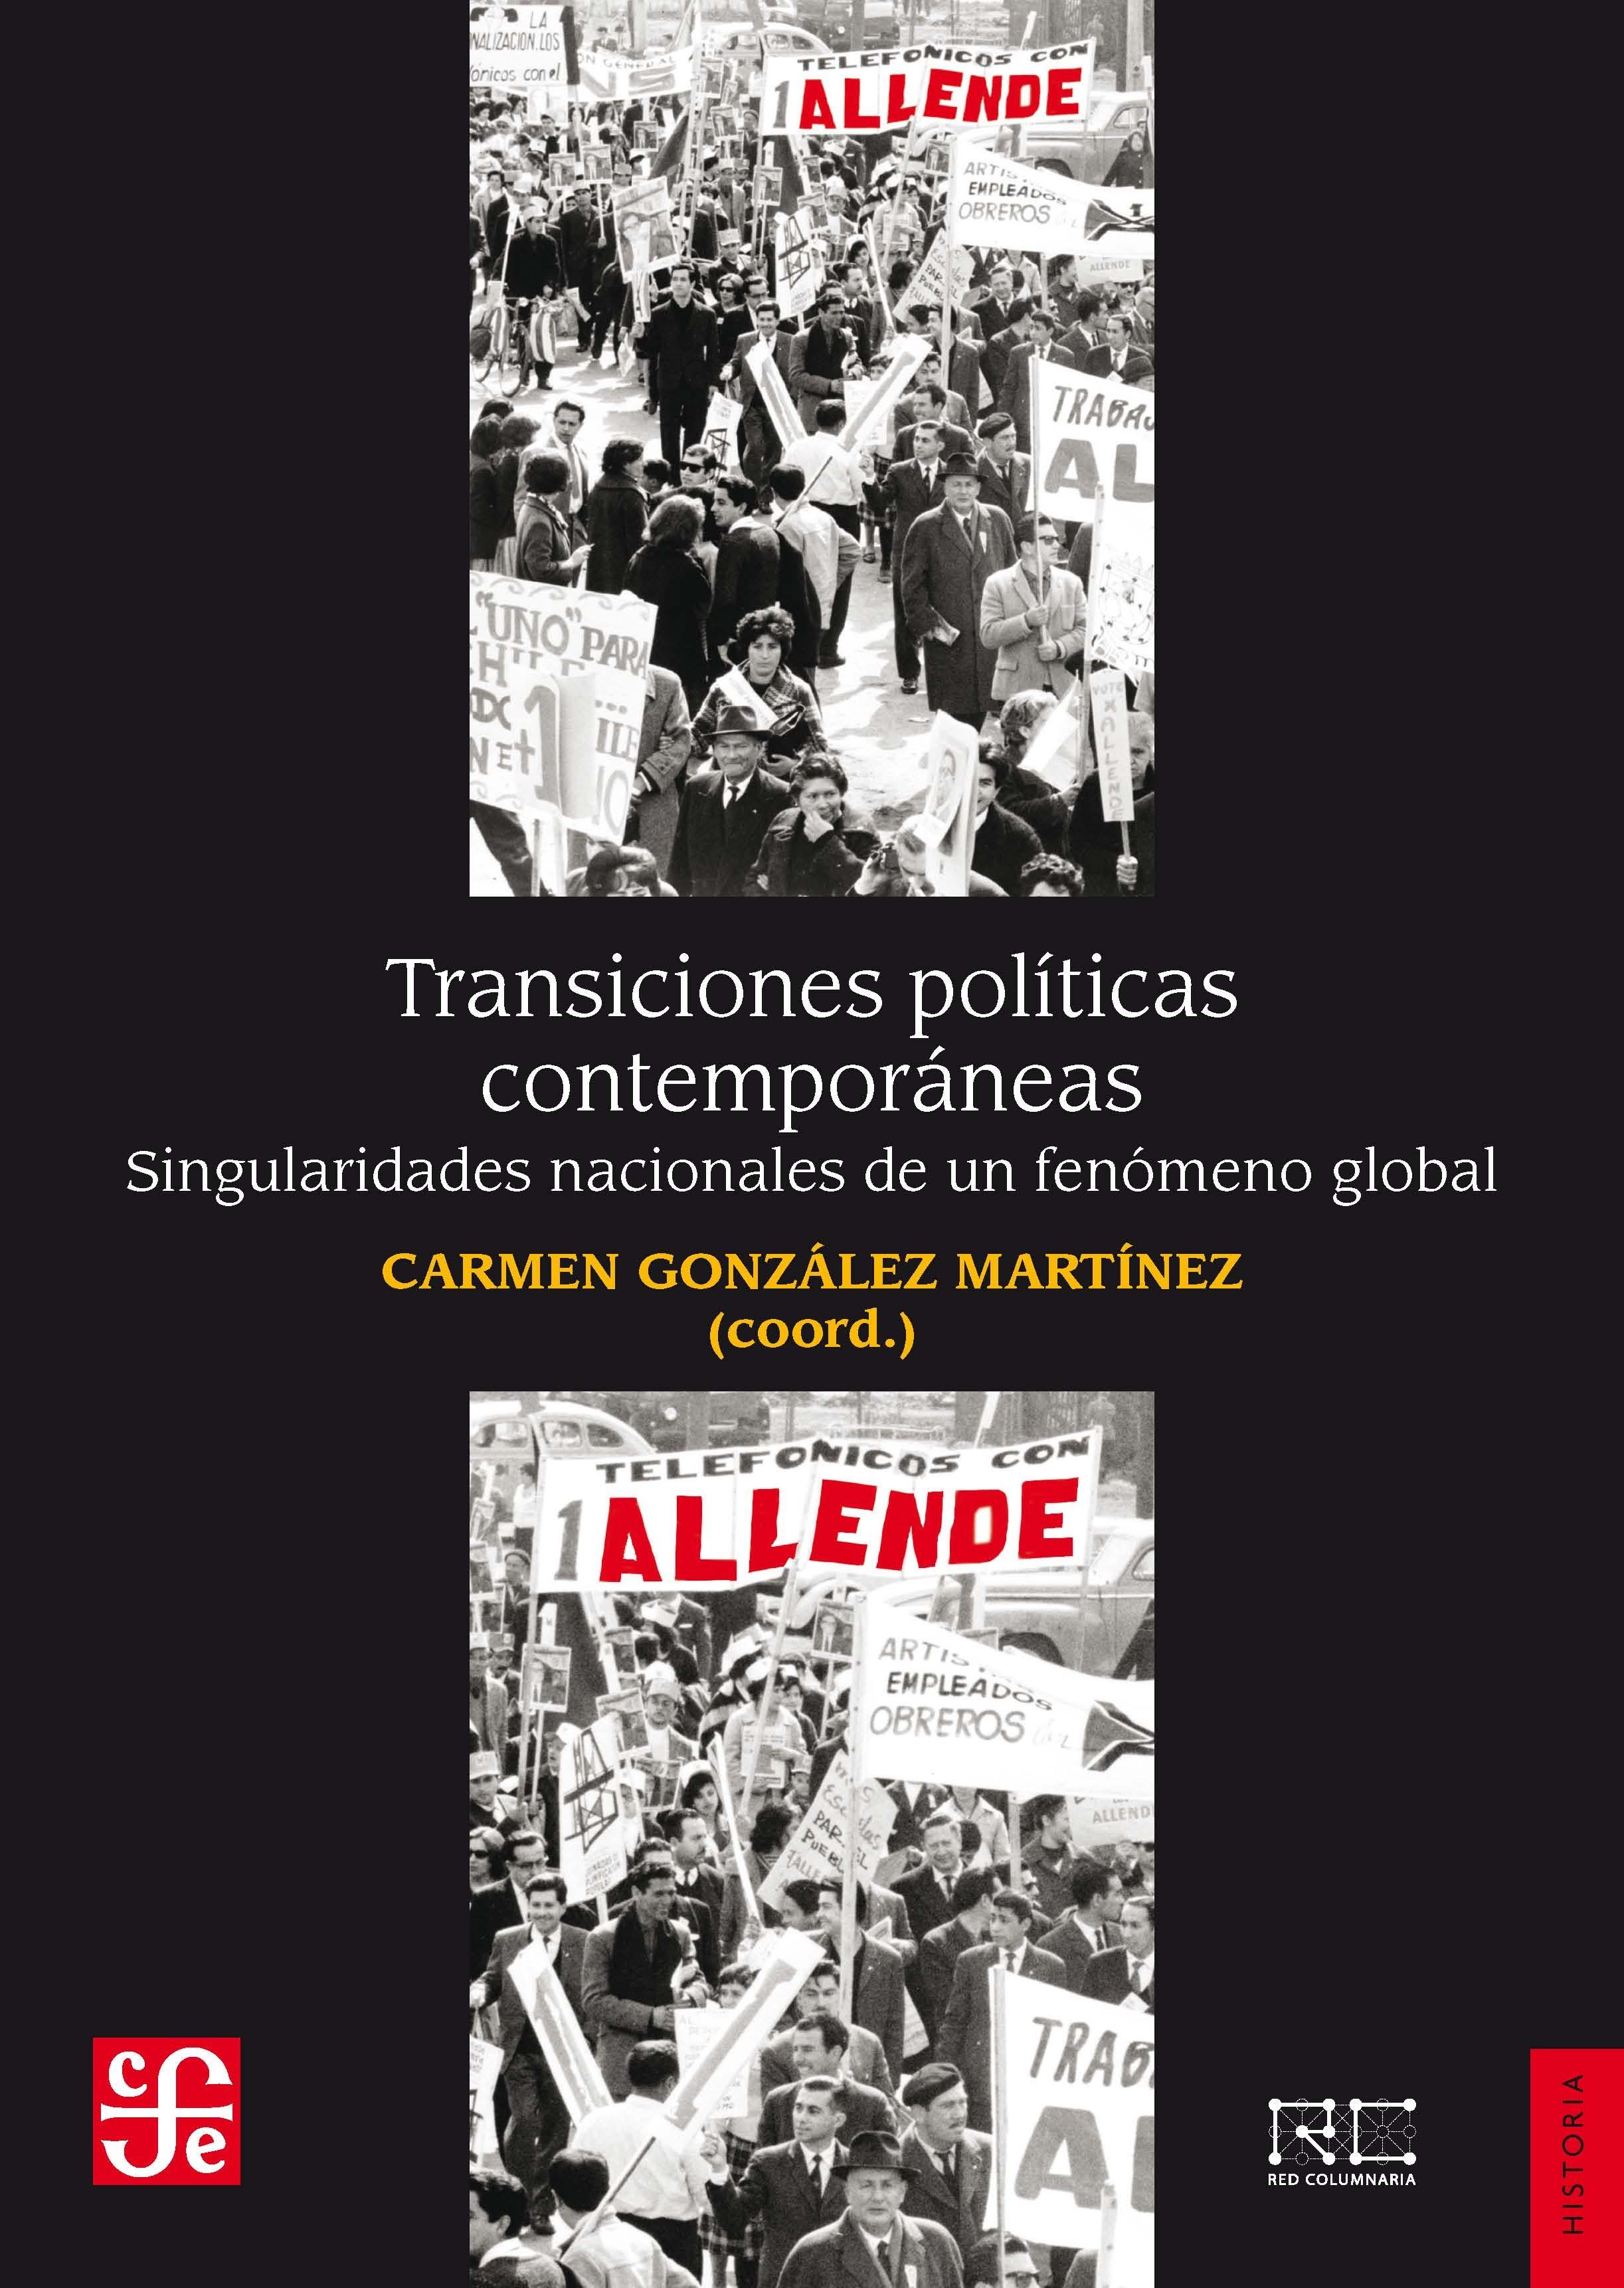 Transiciones políticas contemporáneas "Singularidades nacionales de un fenómeno global "